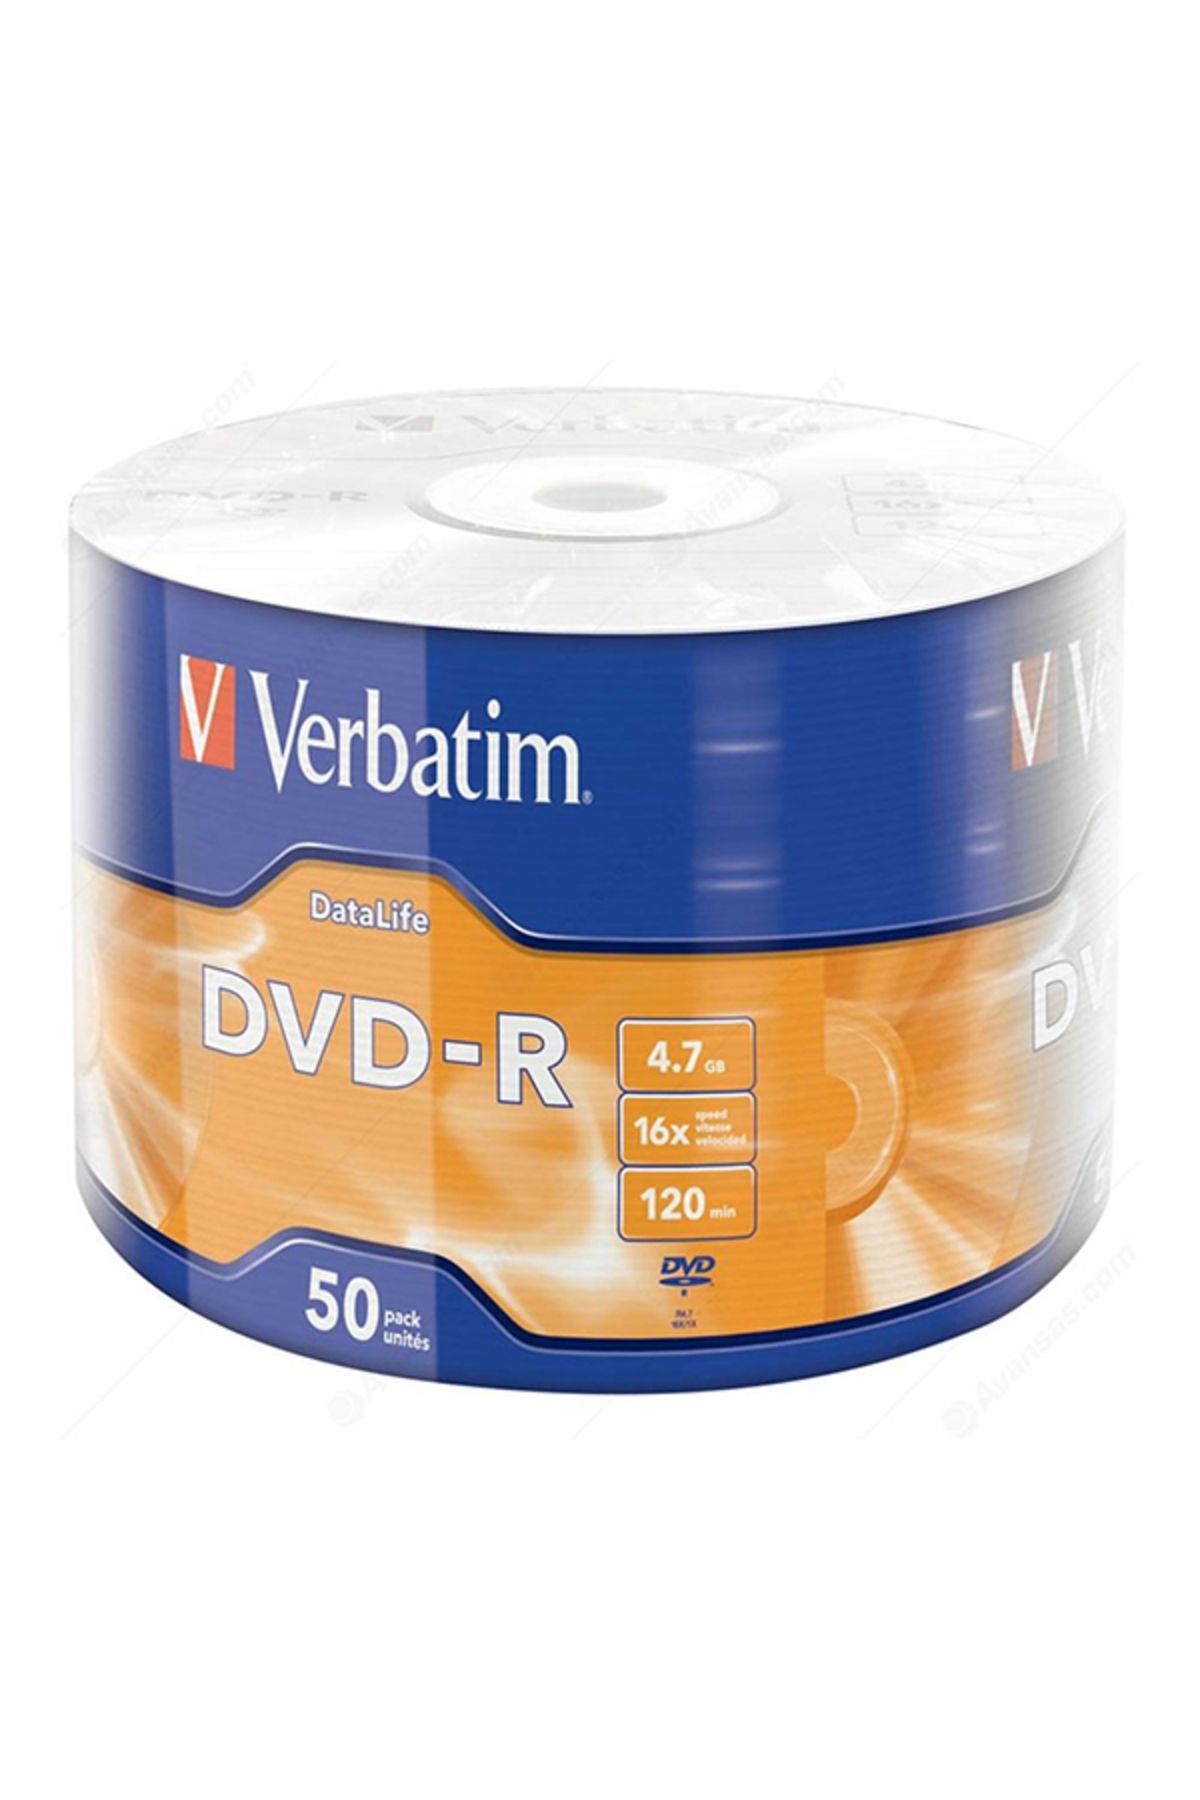 KAYAMU VERBATİM DVD-R 4.7GB 16X 120DK 50Lİ PAKET FİYAT (K0)